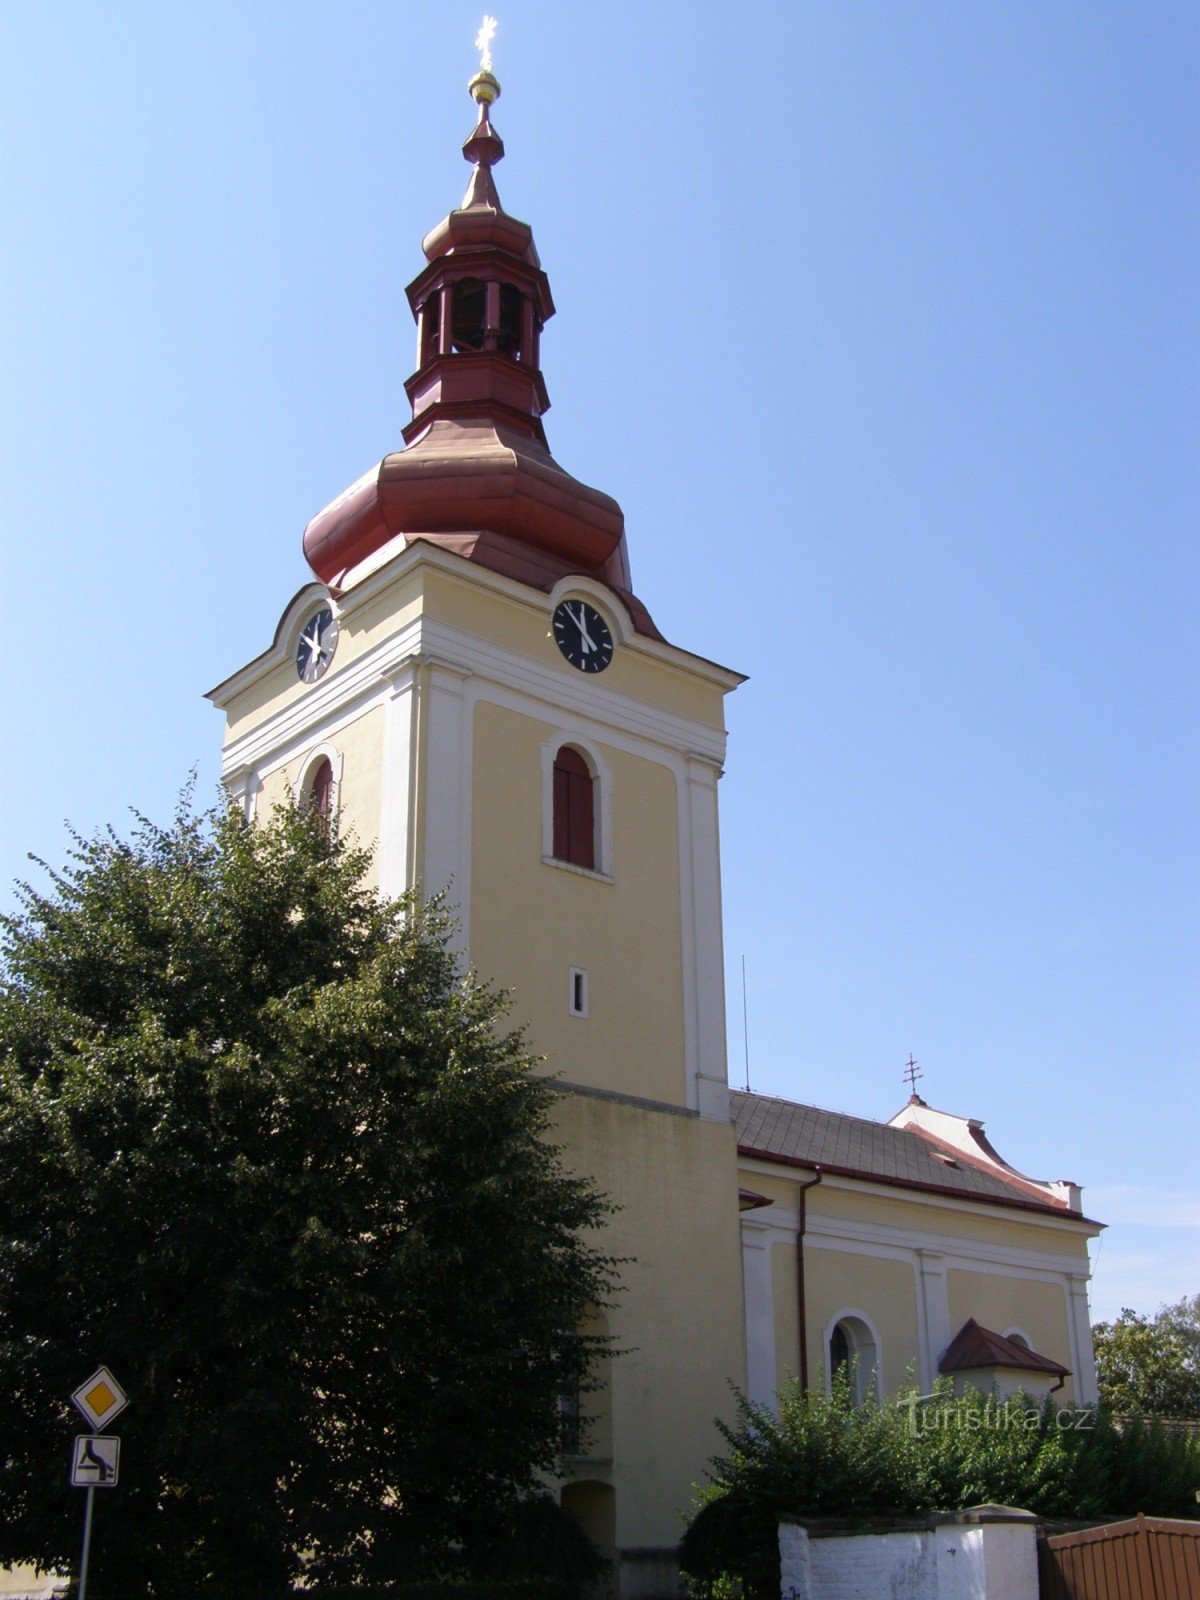 Milovice - crkva